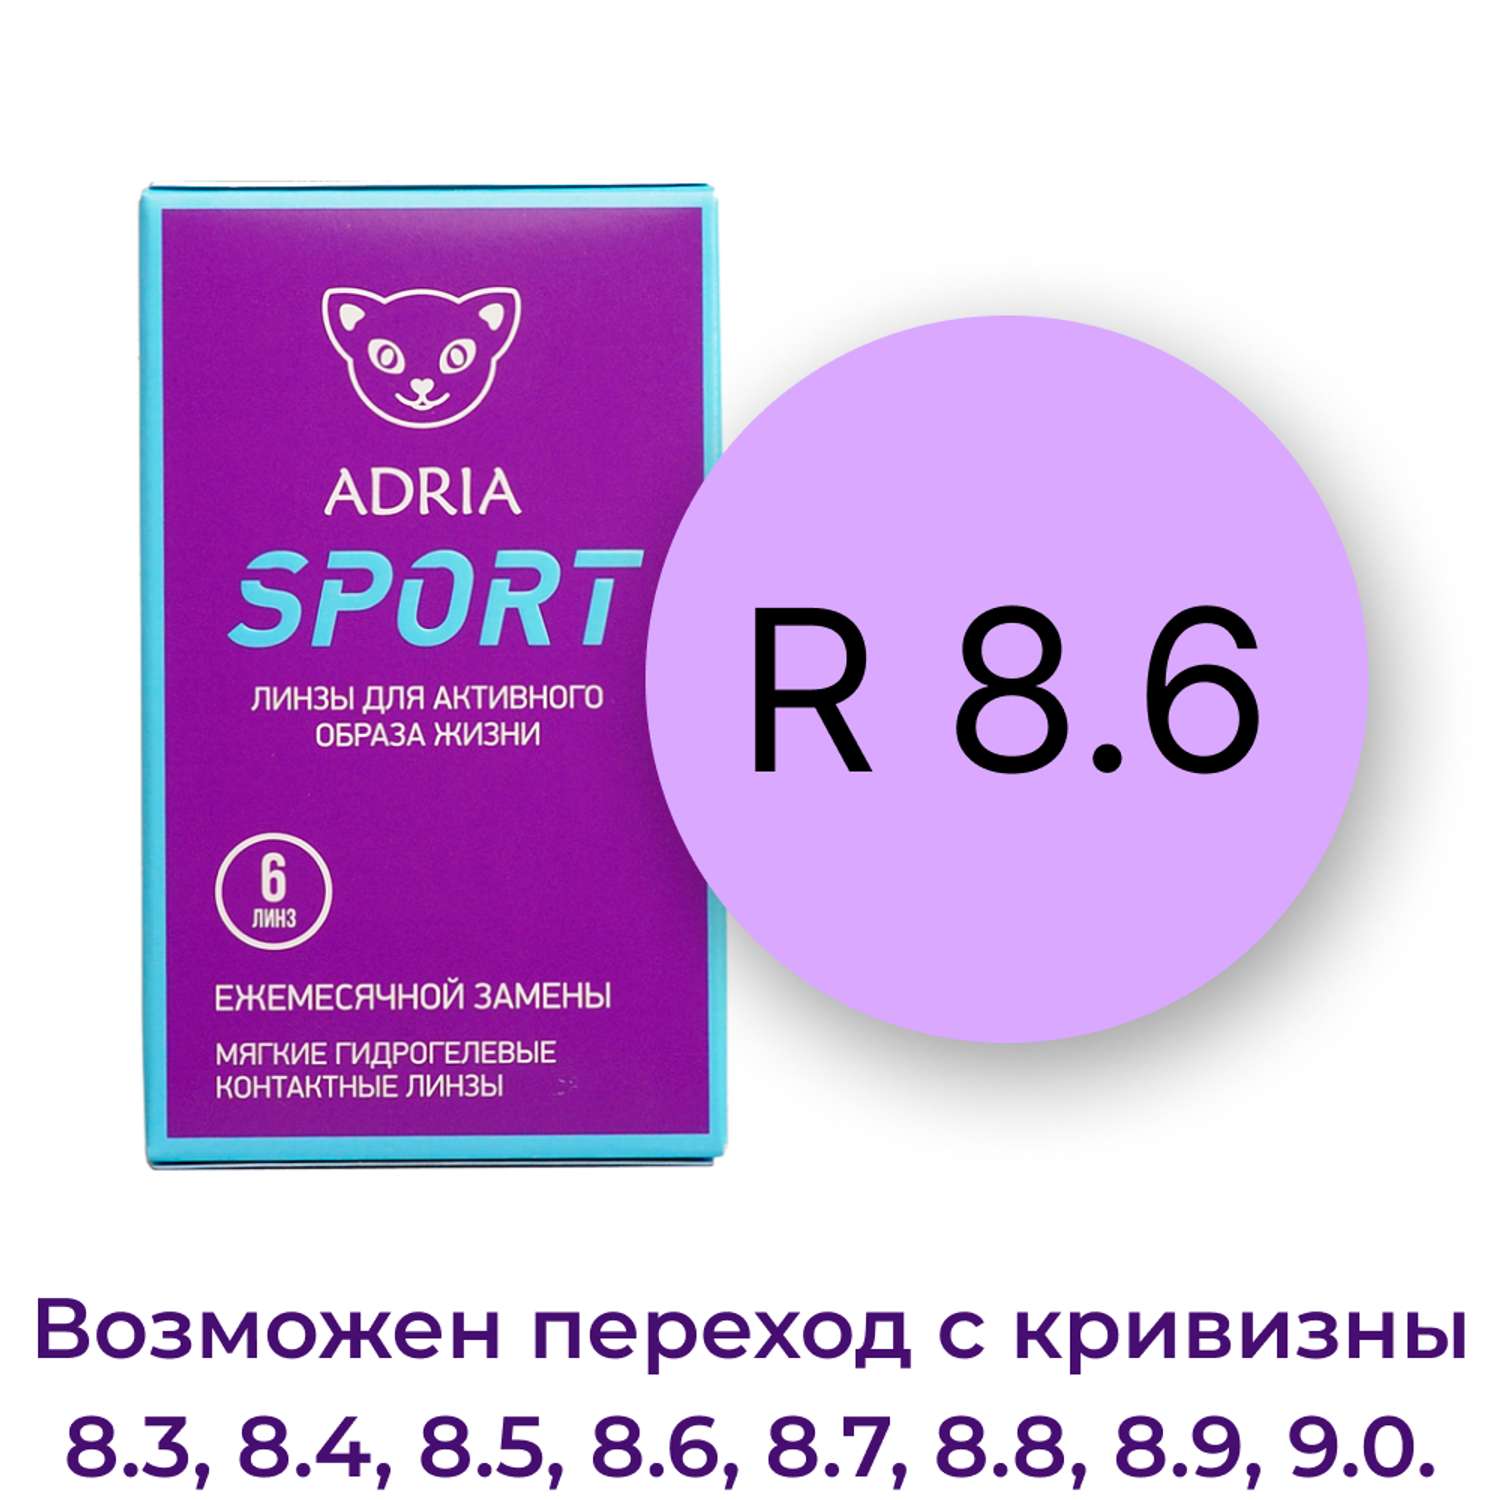 Контактные линзы ADRIA Sport 6 линз R 8.6 -4.00 - фото 3